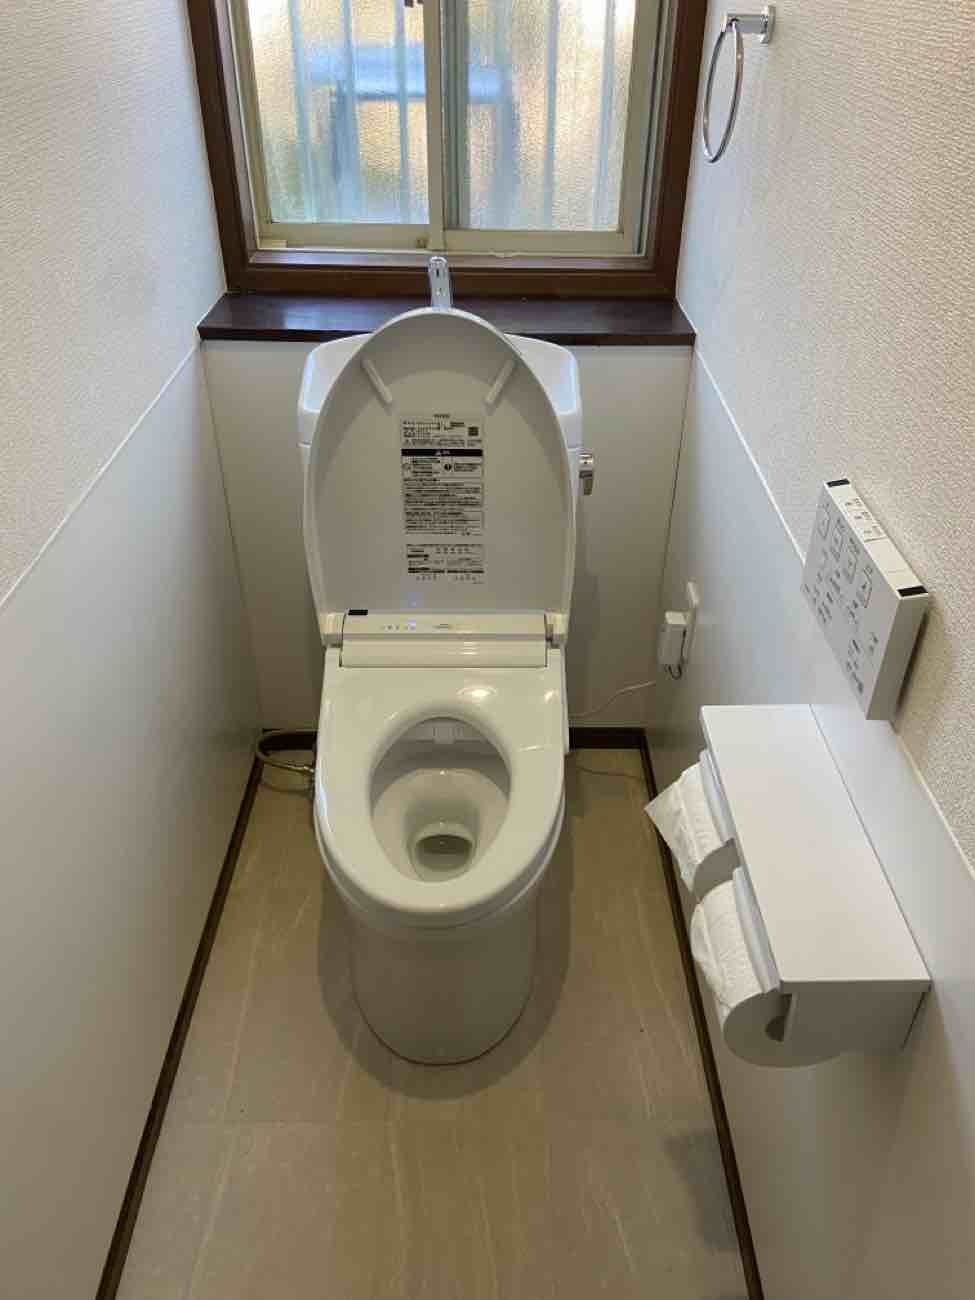 【埼玉県北葛飾郡松伏町】M様邸トイレ交換工事が完了しました。TOTO ピュアレストQR 画像